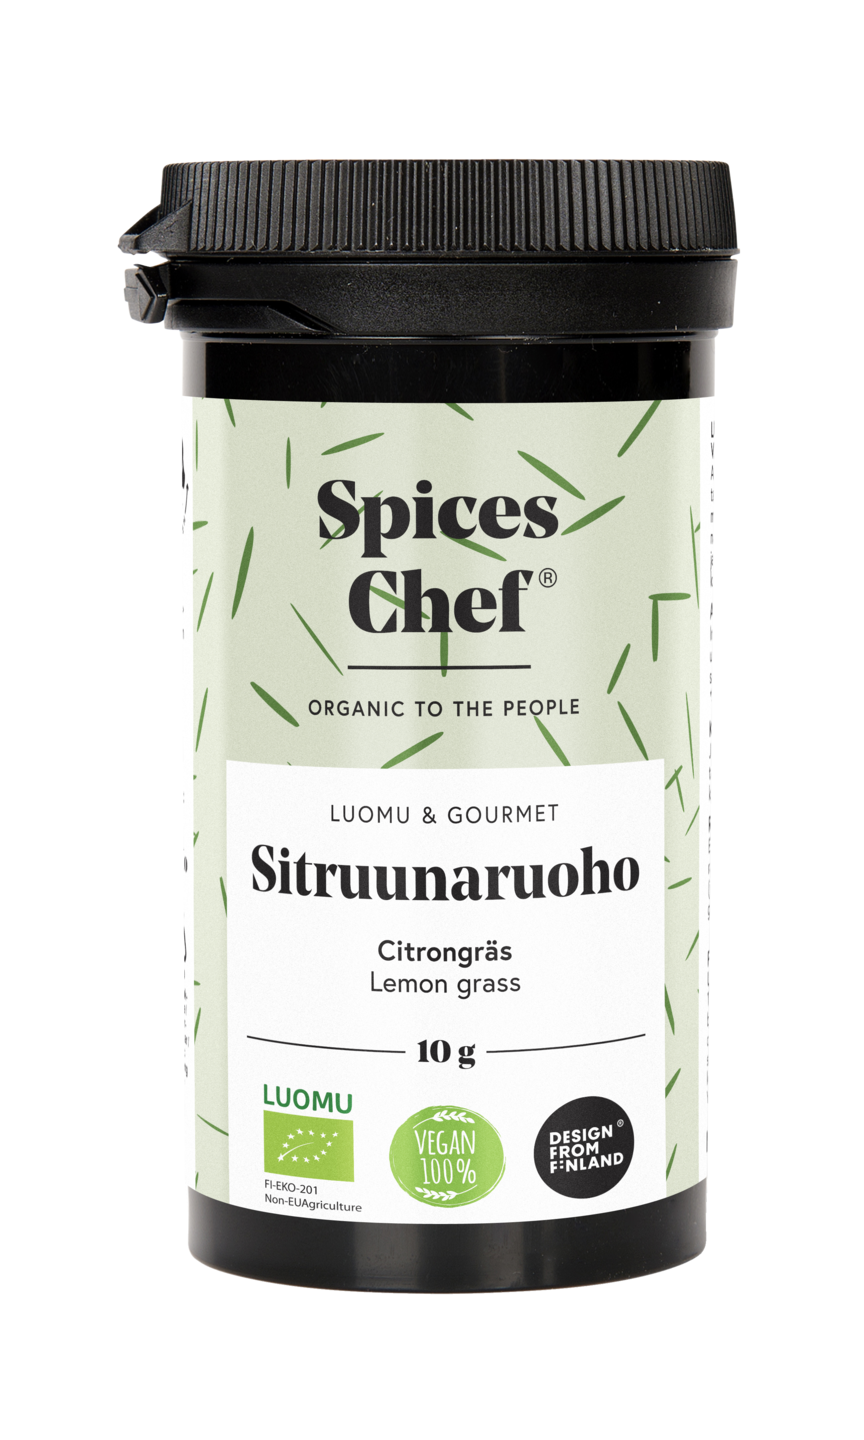 Spices Chefin luomu sitruunaruoho 10g, BPA-vapaassa biomuovi maustepurkkissa.